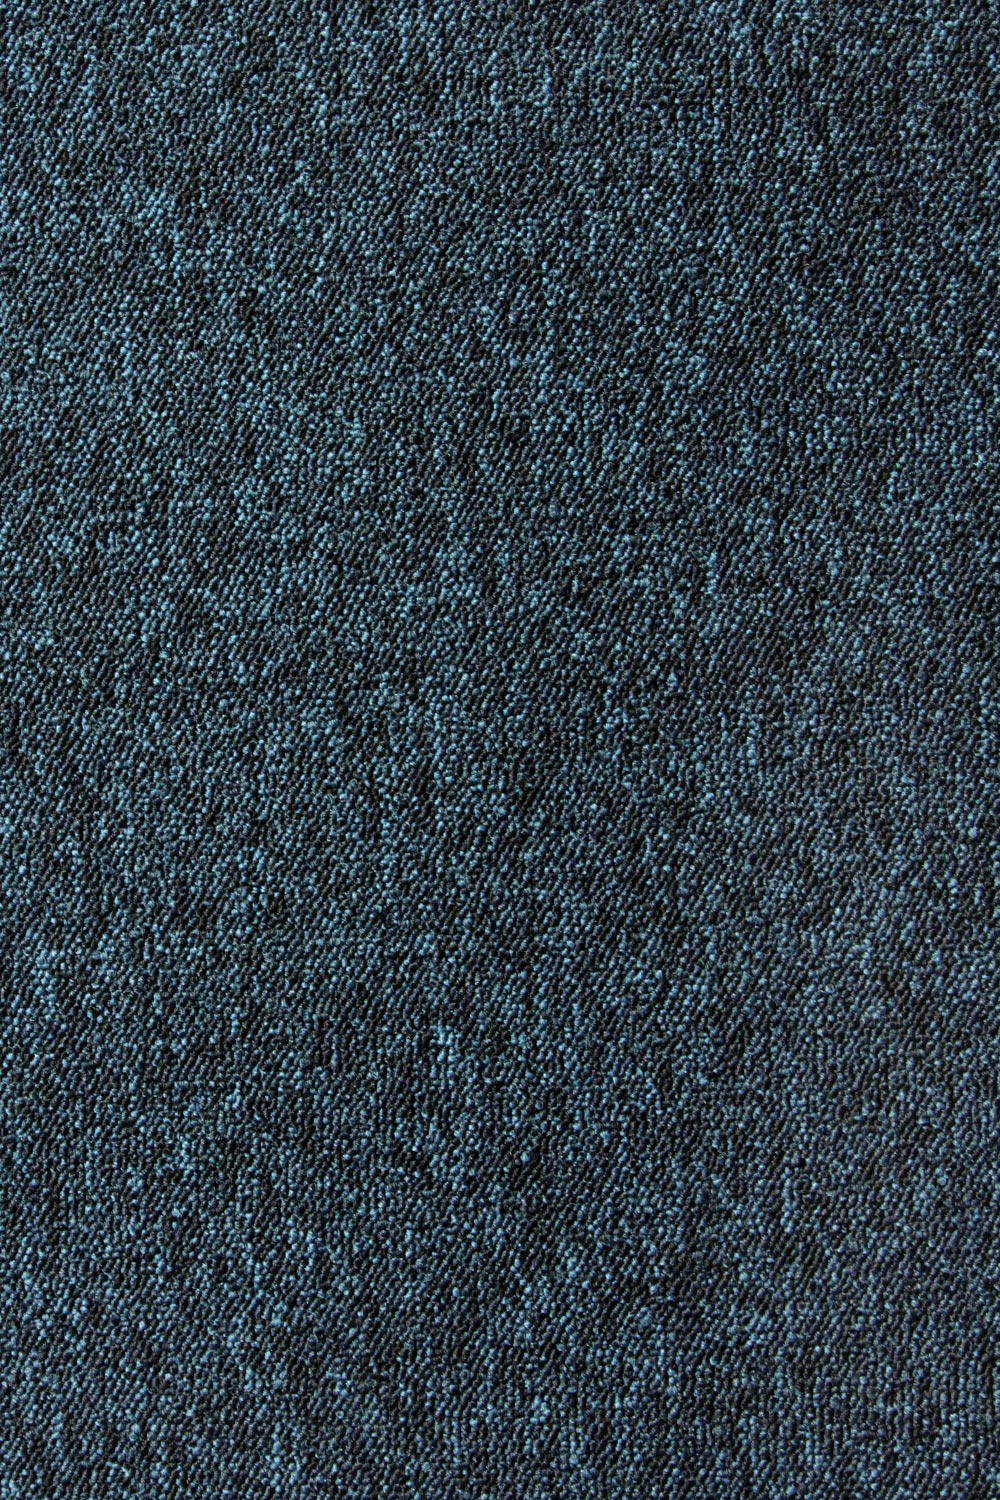 Metrážny koberec Lyon Solid 77